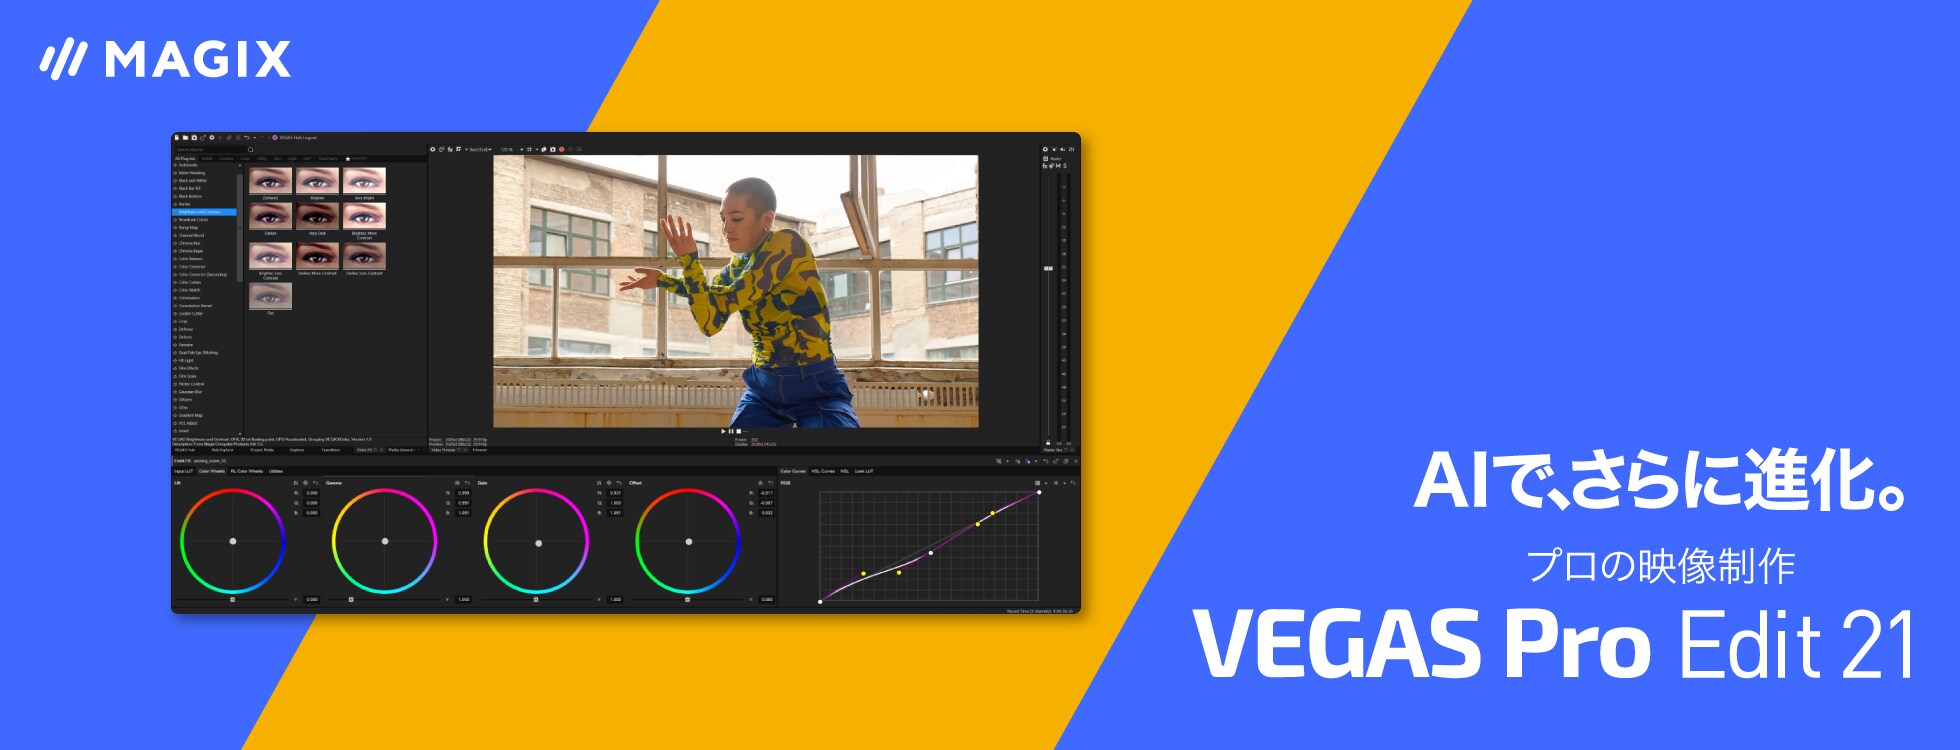 プロの映像制作ソフト「VEGAS Pro Edit 21」